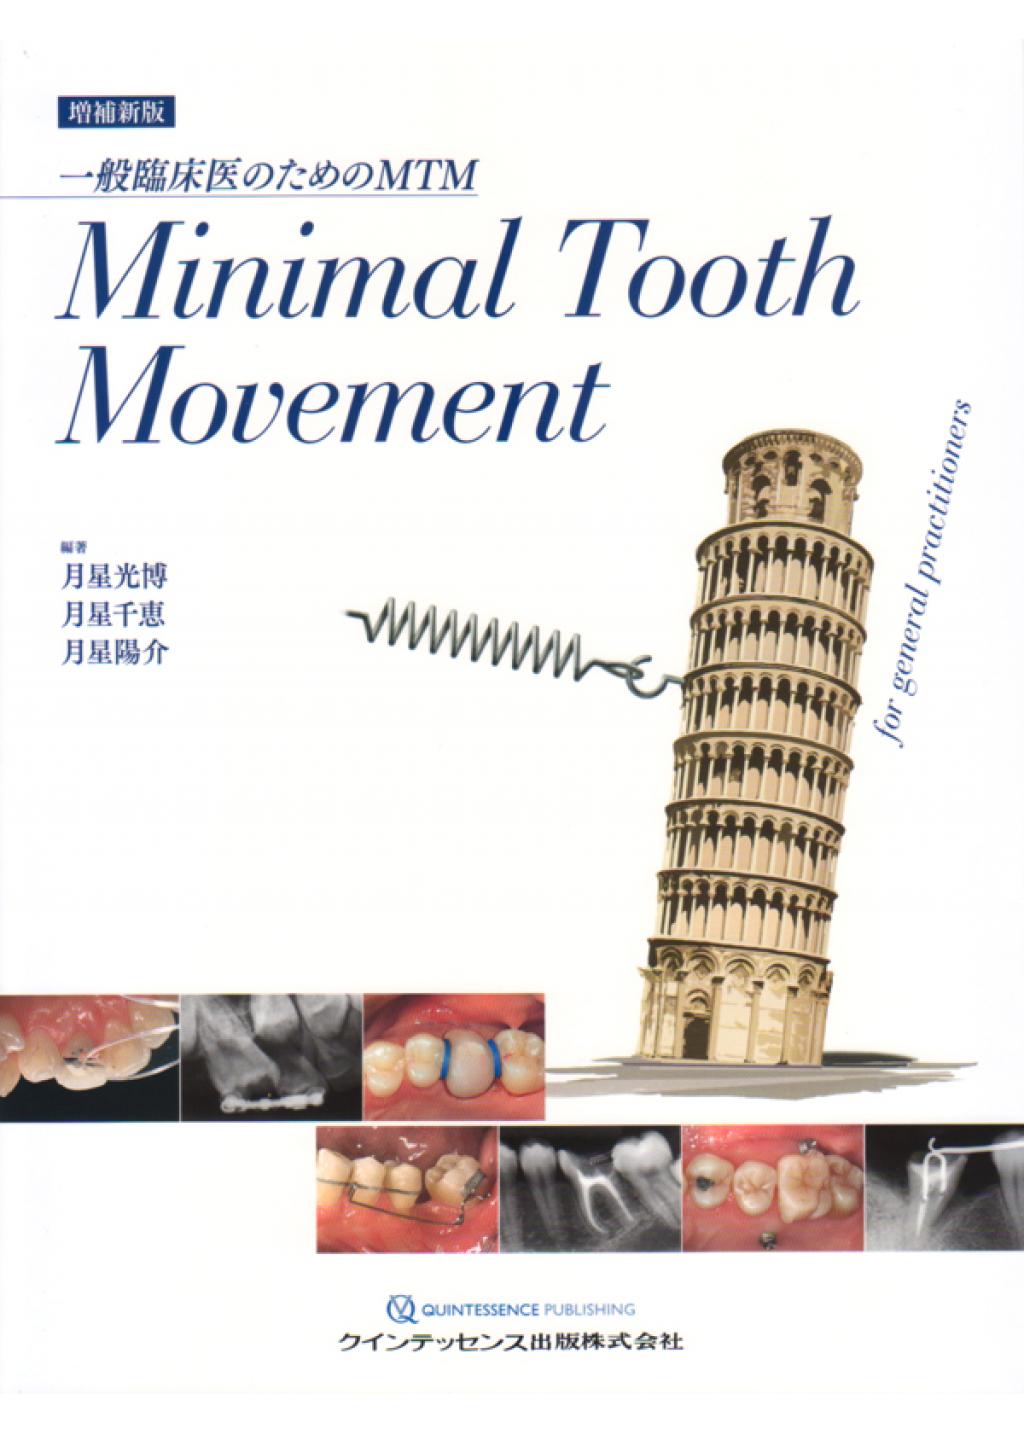 増補新版 Minimal Tooth Movementの購入ならWHITE CROSS